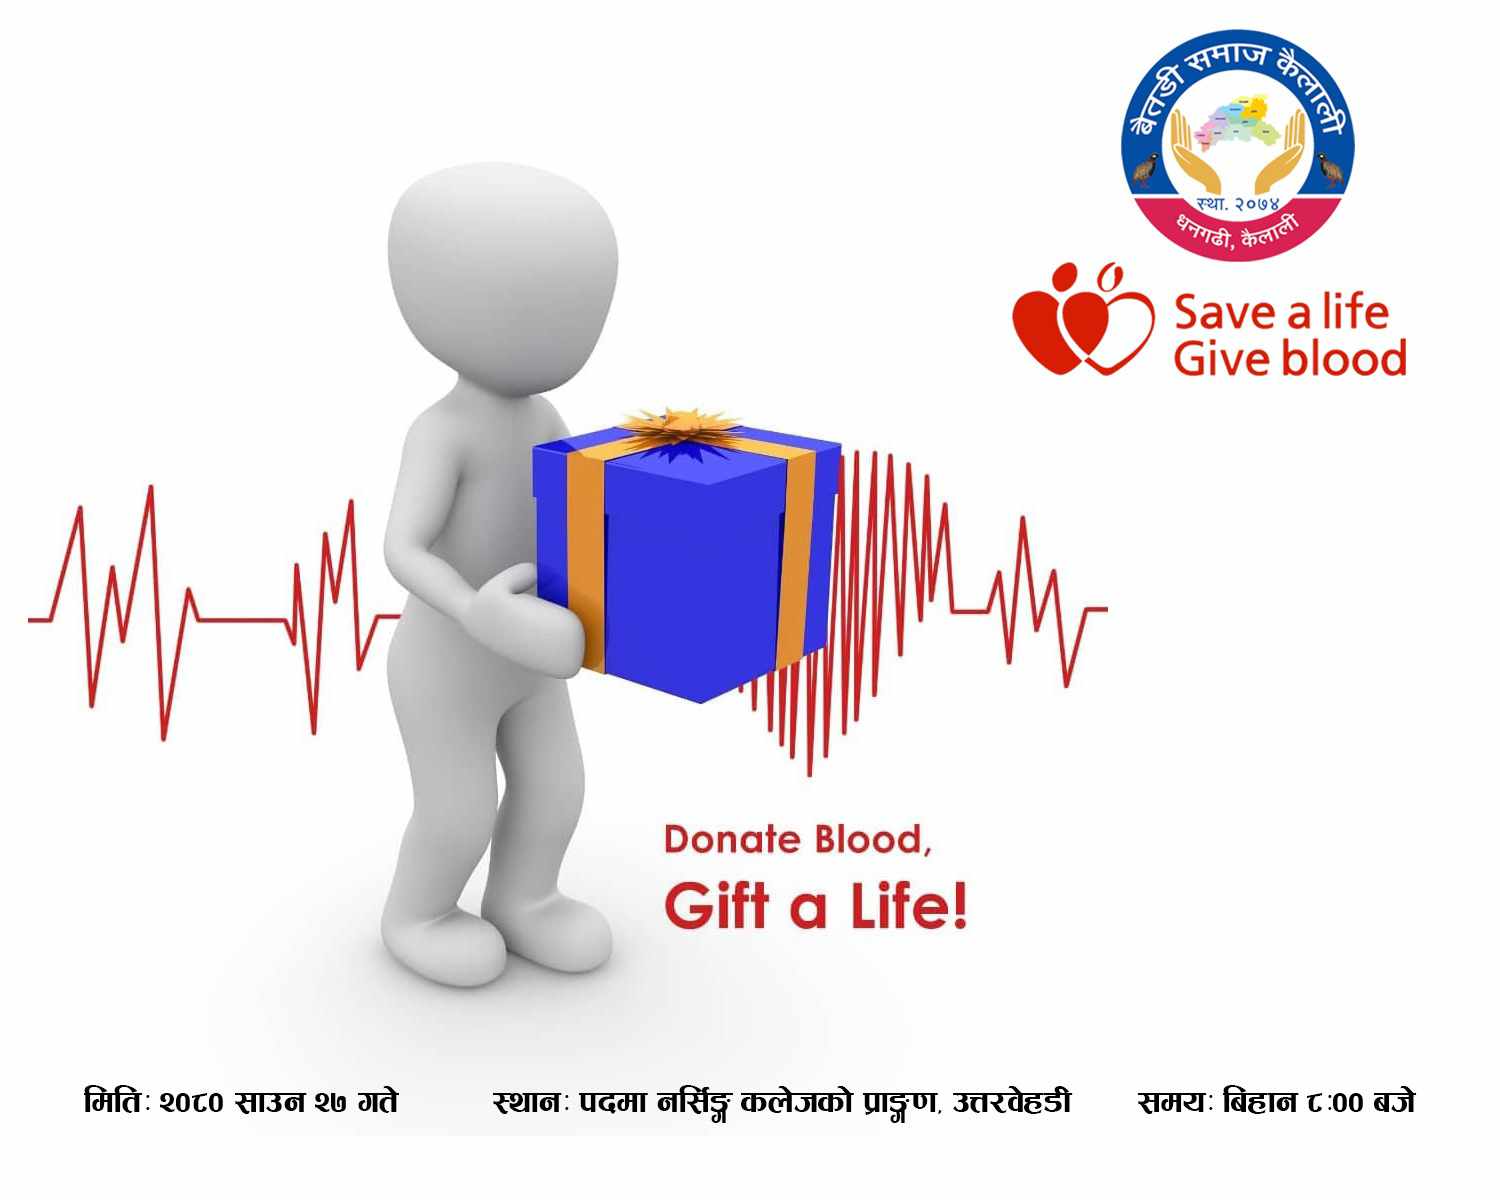 बैतडी समाज कैलालीले धनगढीमा रक्तदान कार्यक्रम गर्दै